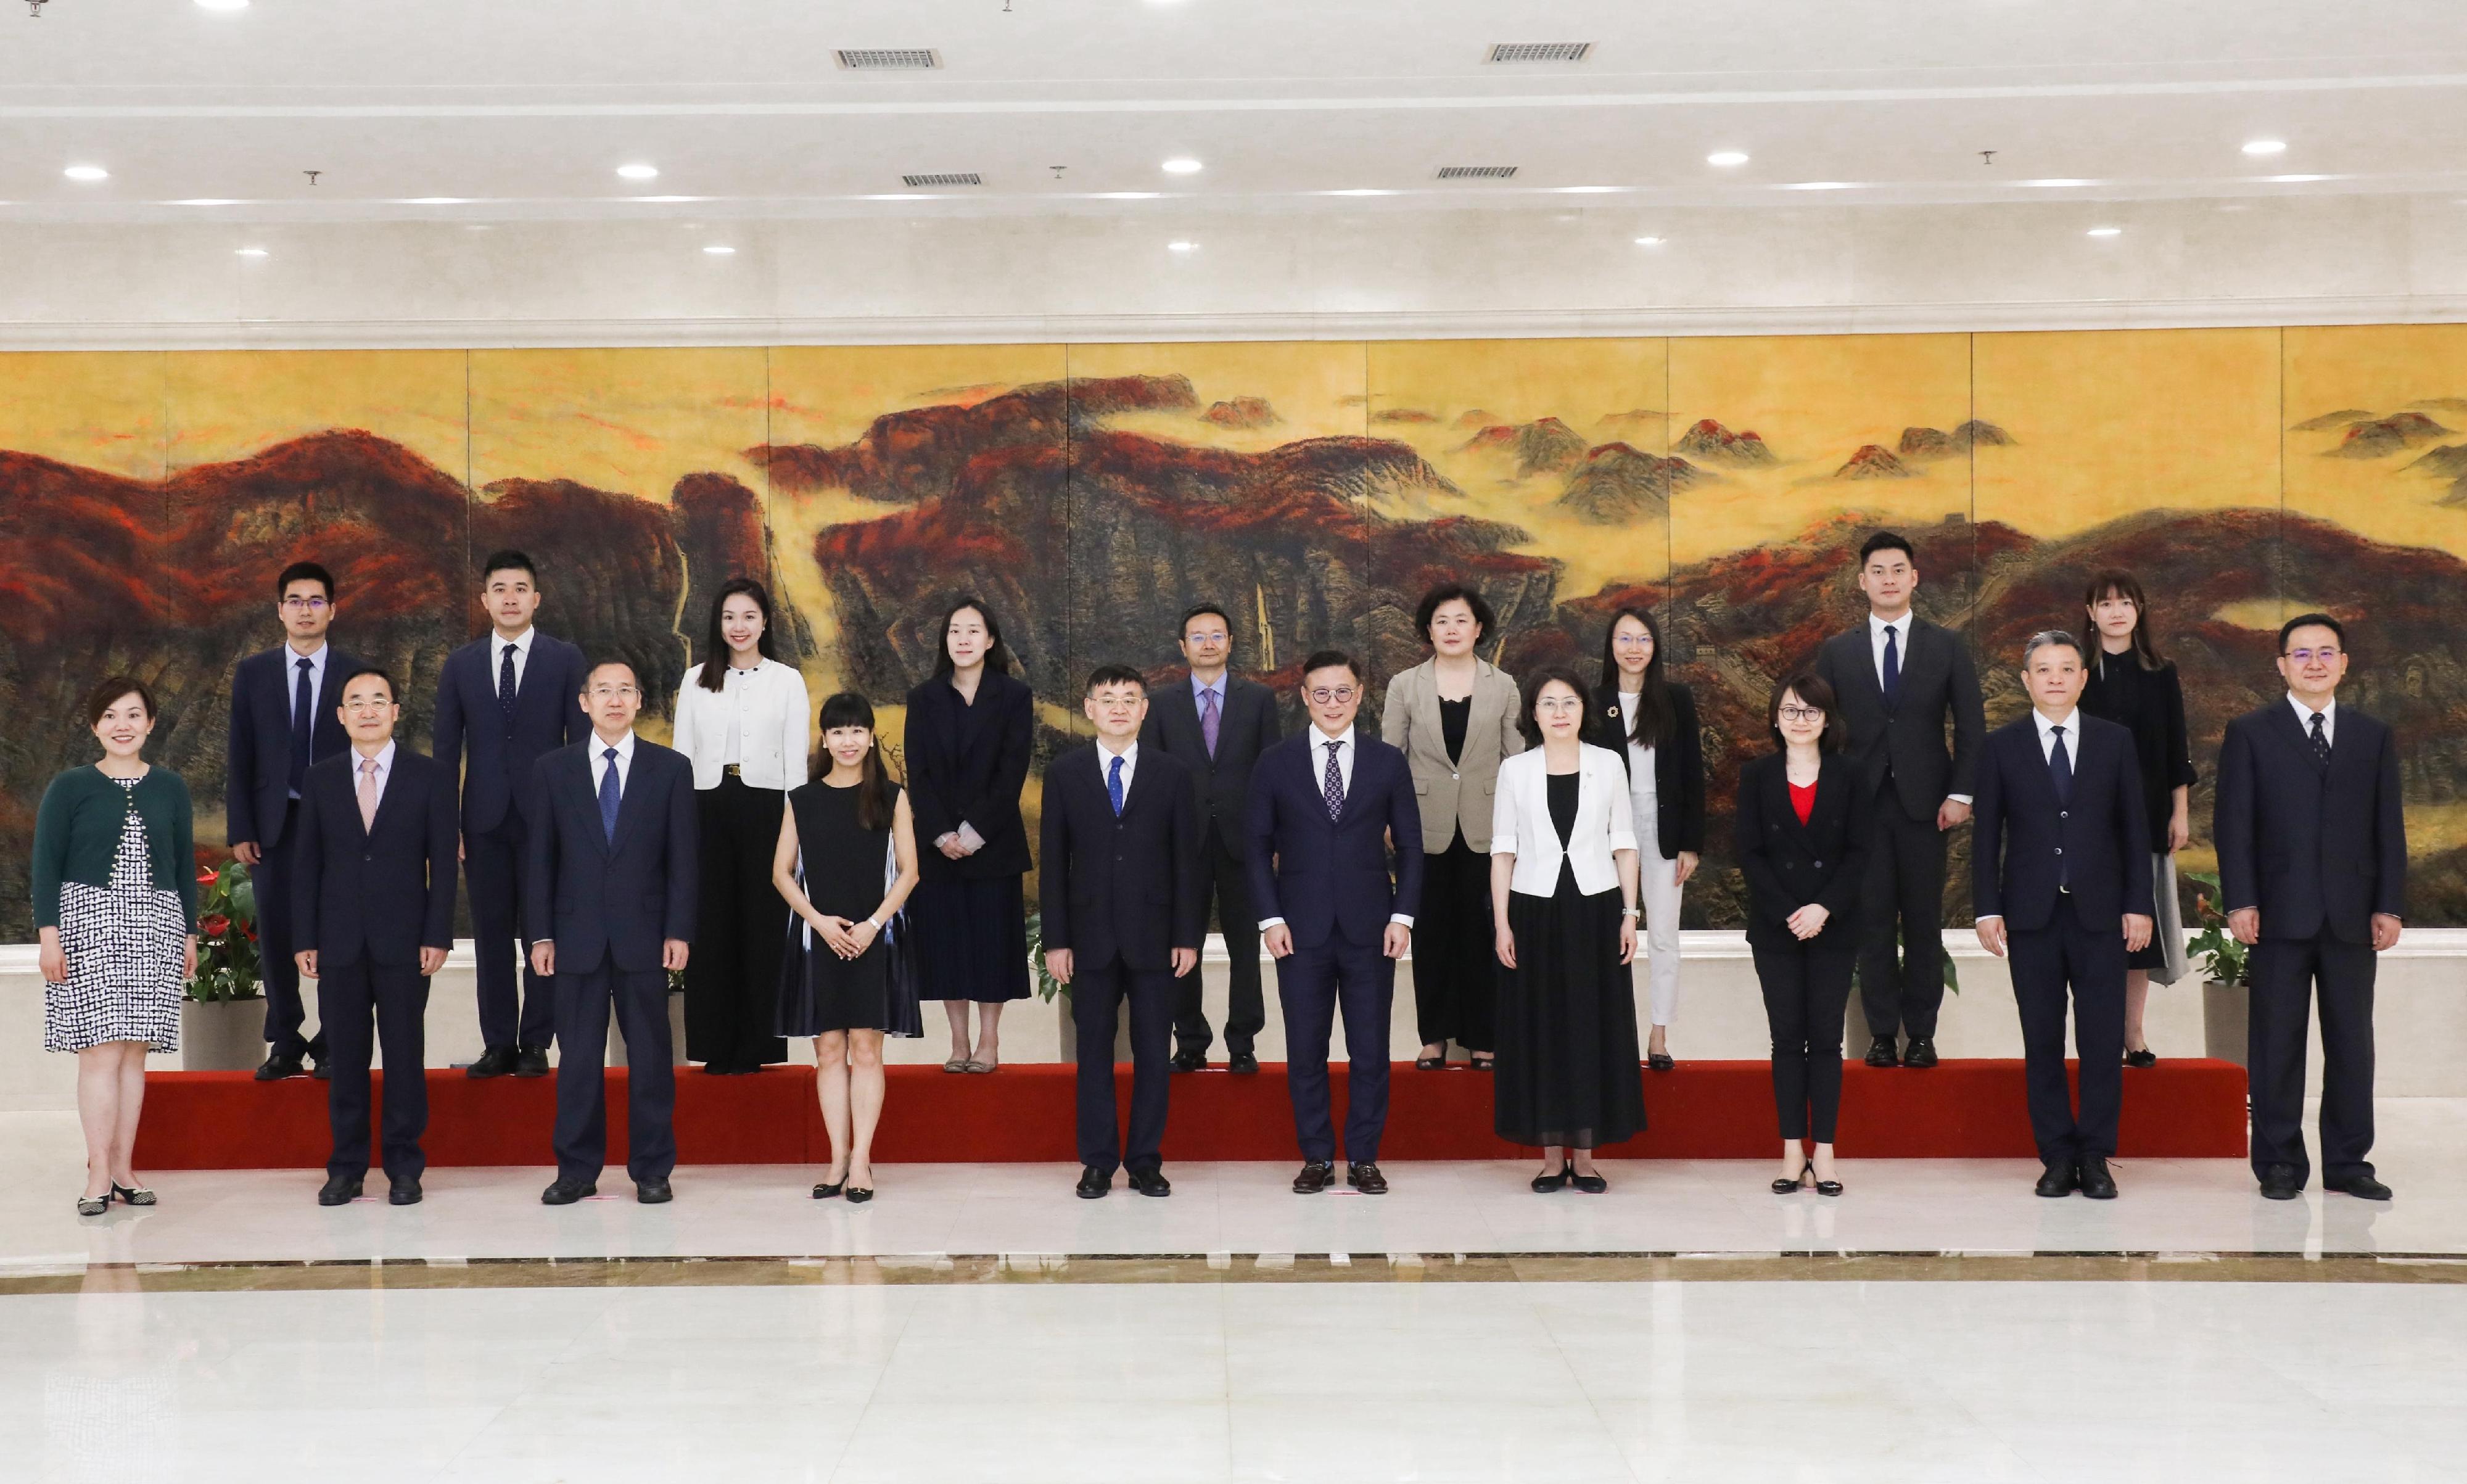 律政司副司长张国钧今日（六月十四日）在北京拜访司法部，与司法部副部长胡卫列会晤 。图示张国钧（前排右五）和胡卫列（前排左五）与其他人员在会后合照。

